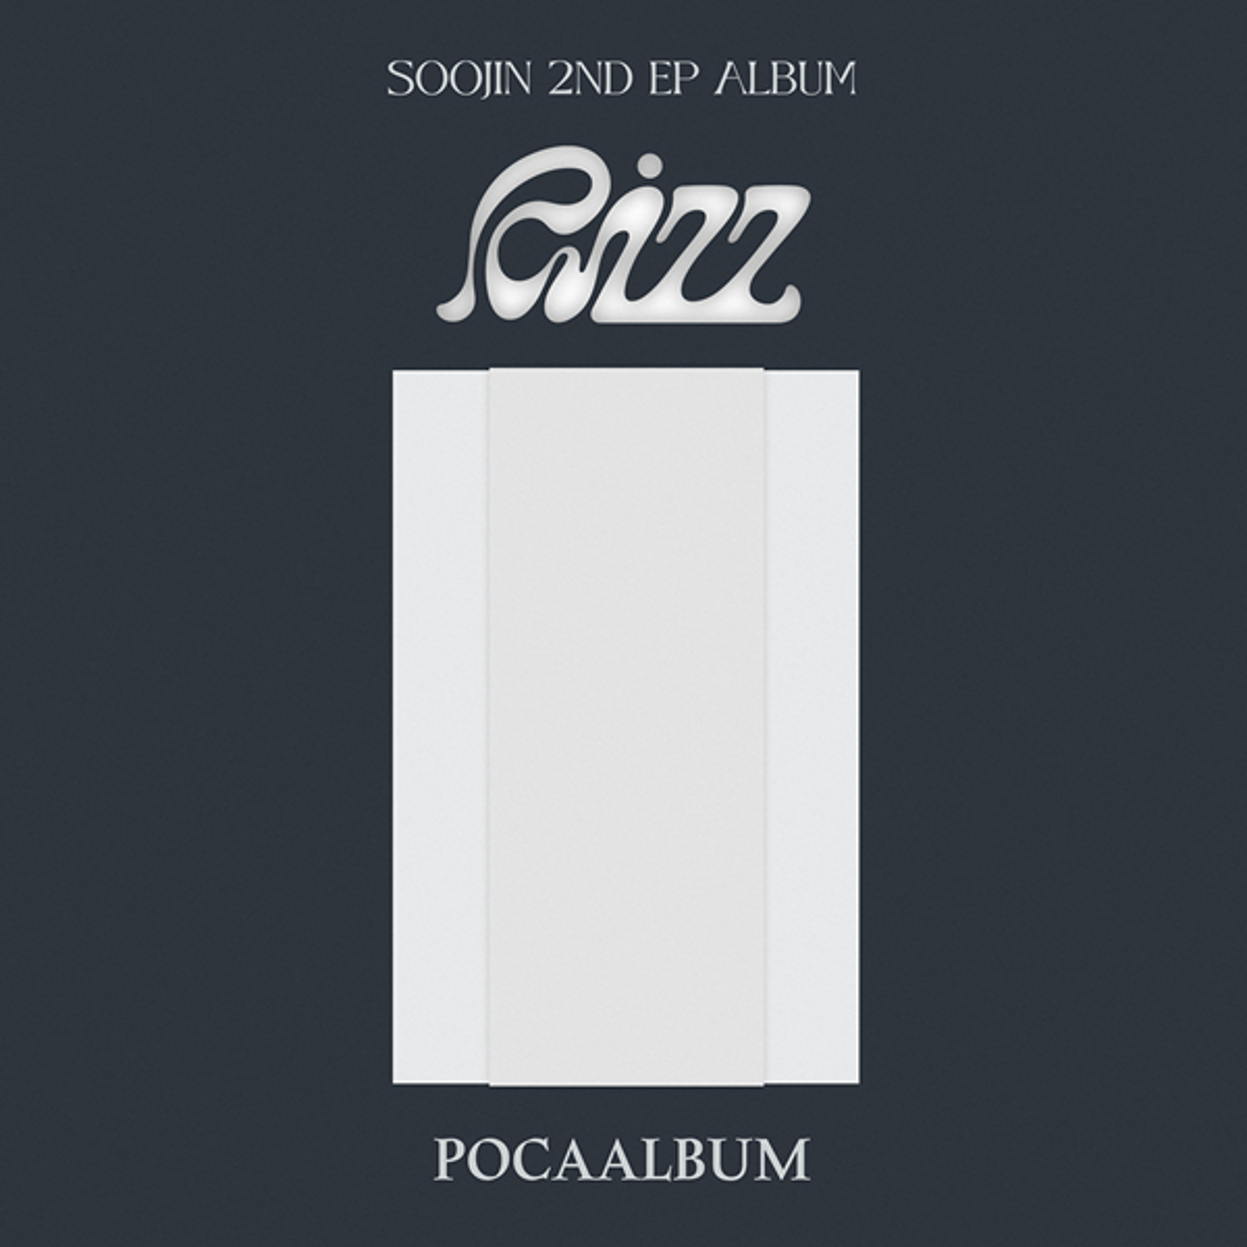 スジン(SOOJIN) - EPアルバム2集[RIZZ] (POCAALBUM)